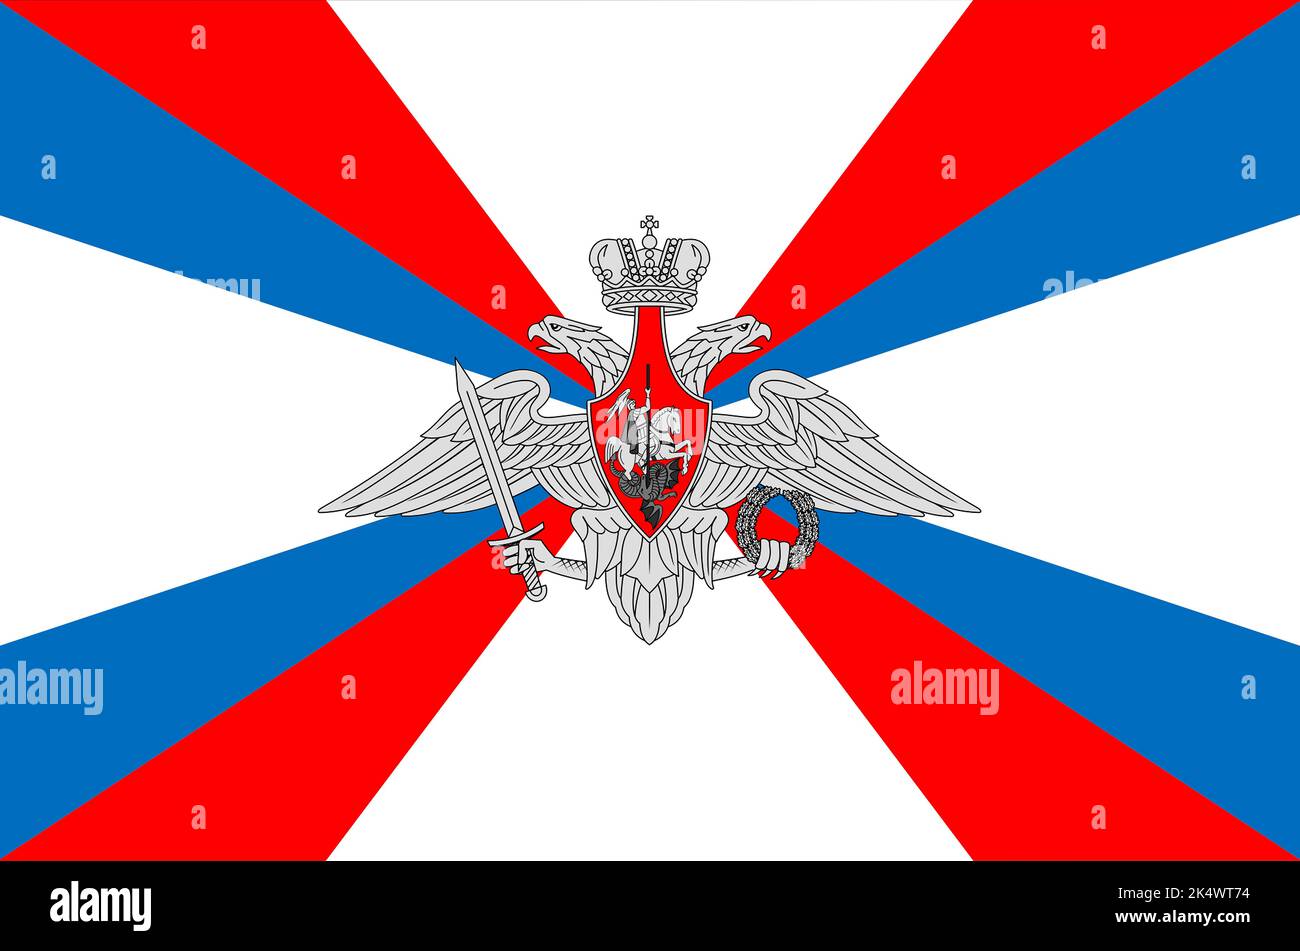 Drapeau du Ministère de la défense de la Fédération de Russie - Russie. Banque D'Images